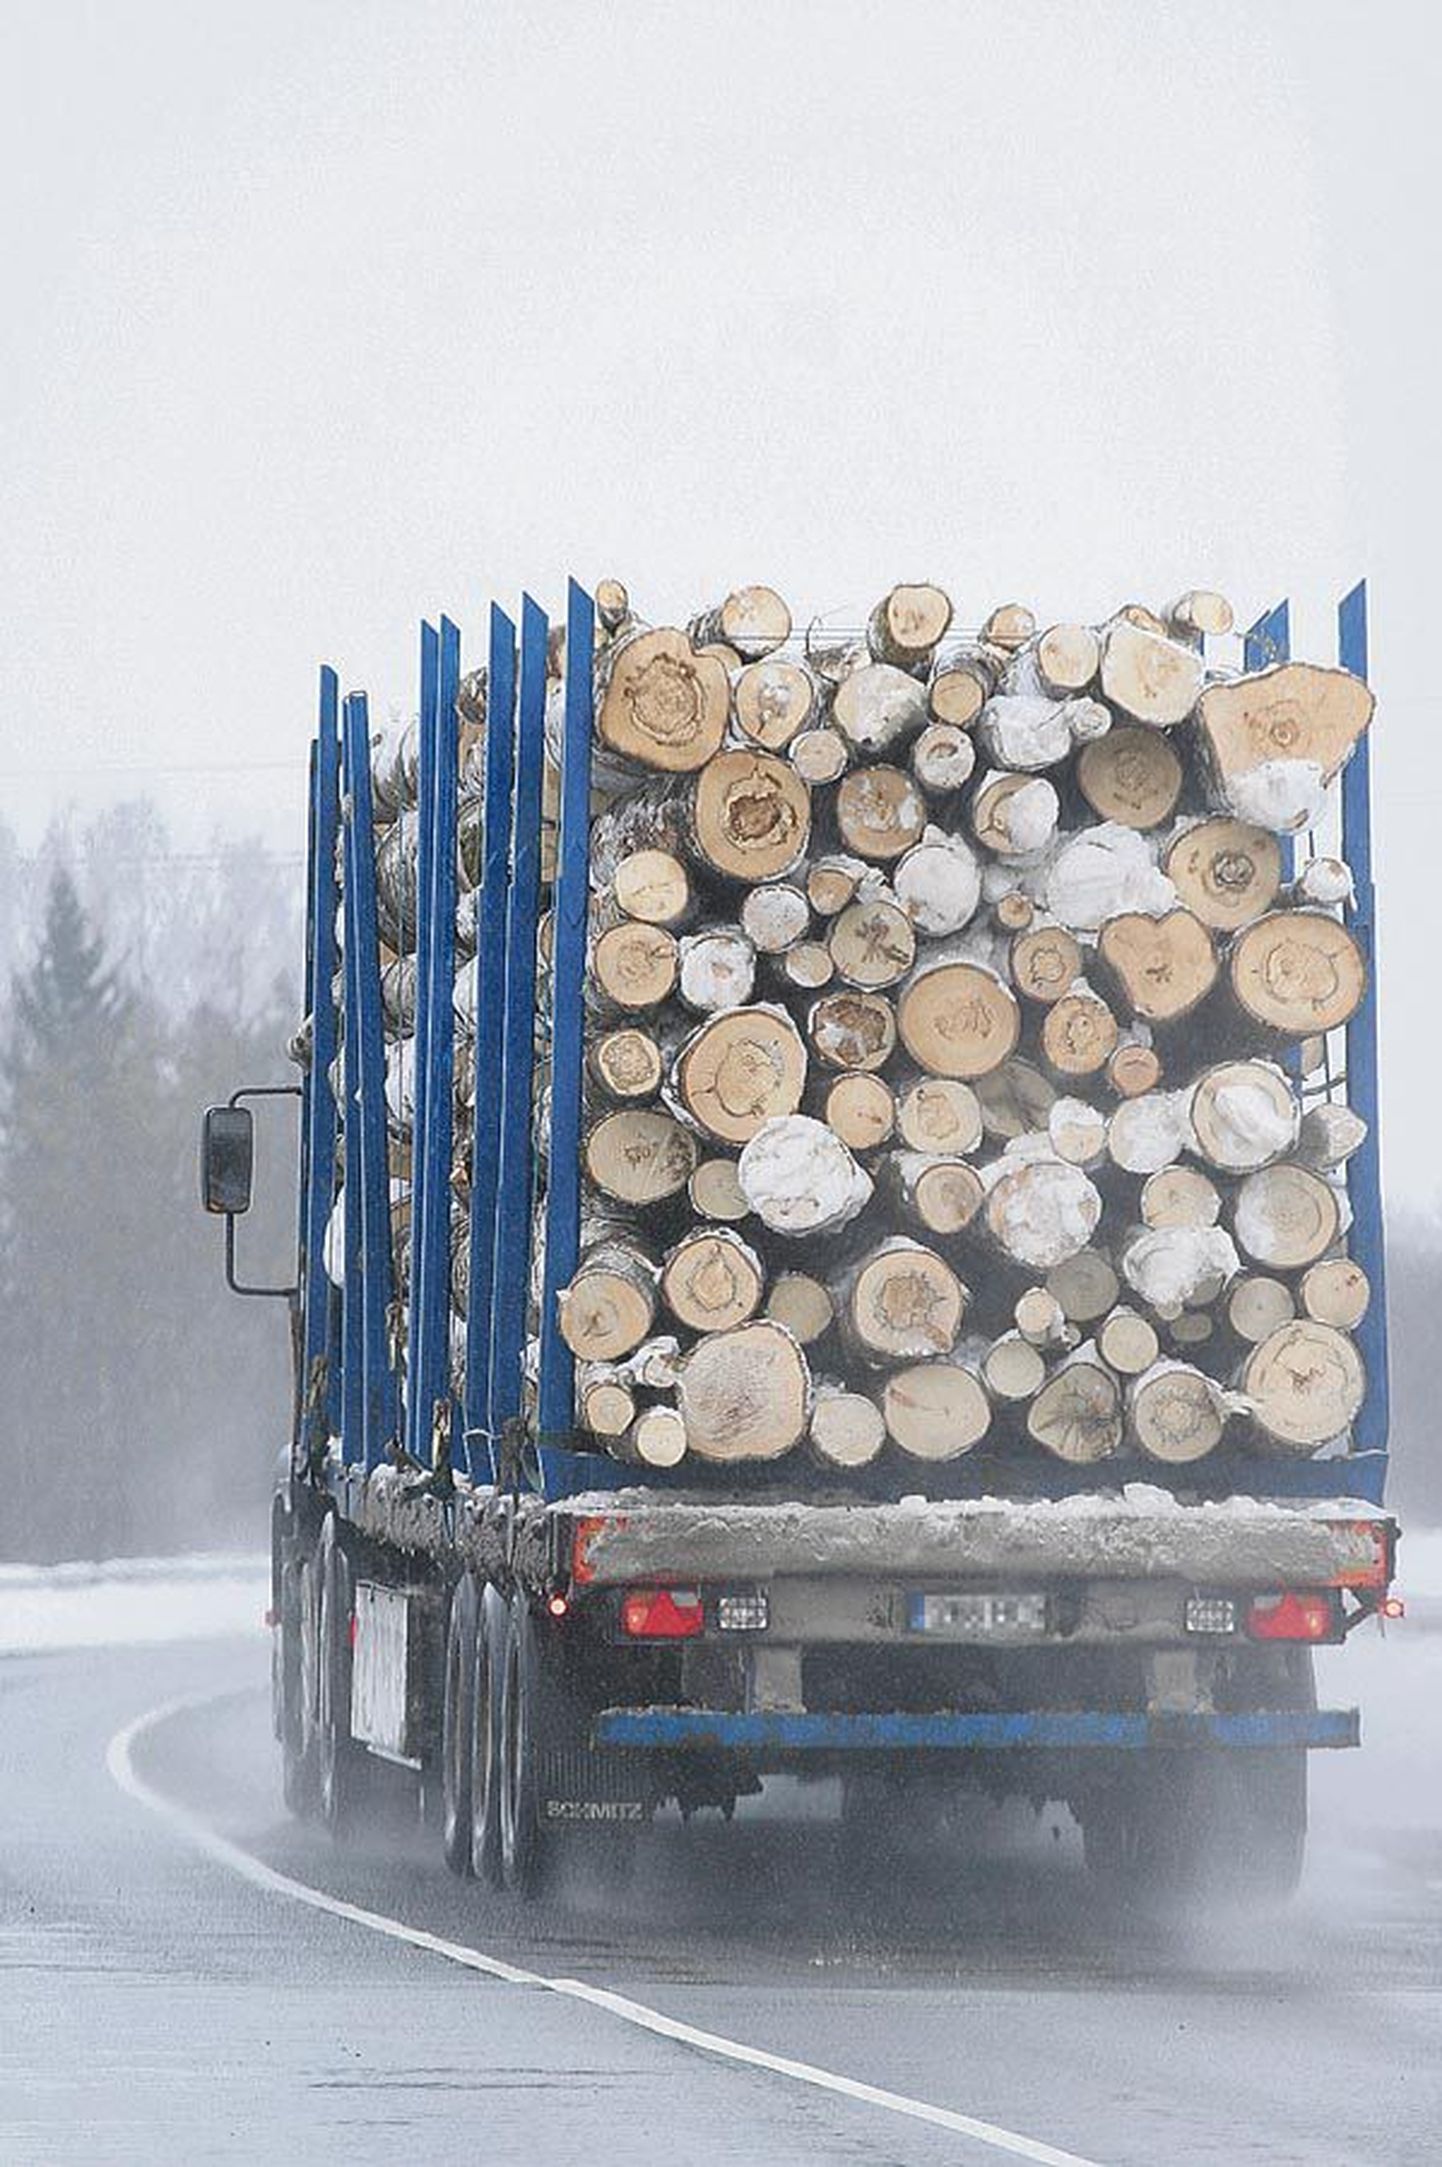 Viljandimaalt on viimasel ajal teada vähemalt kaks juhtumit, kus metsaveoauto koormast on pudenenud palke. Fotol olev auto ei ole kõnealuste sündmustega seotud.